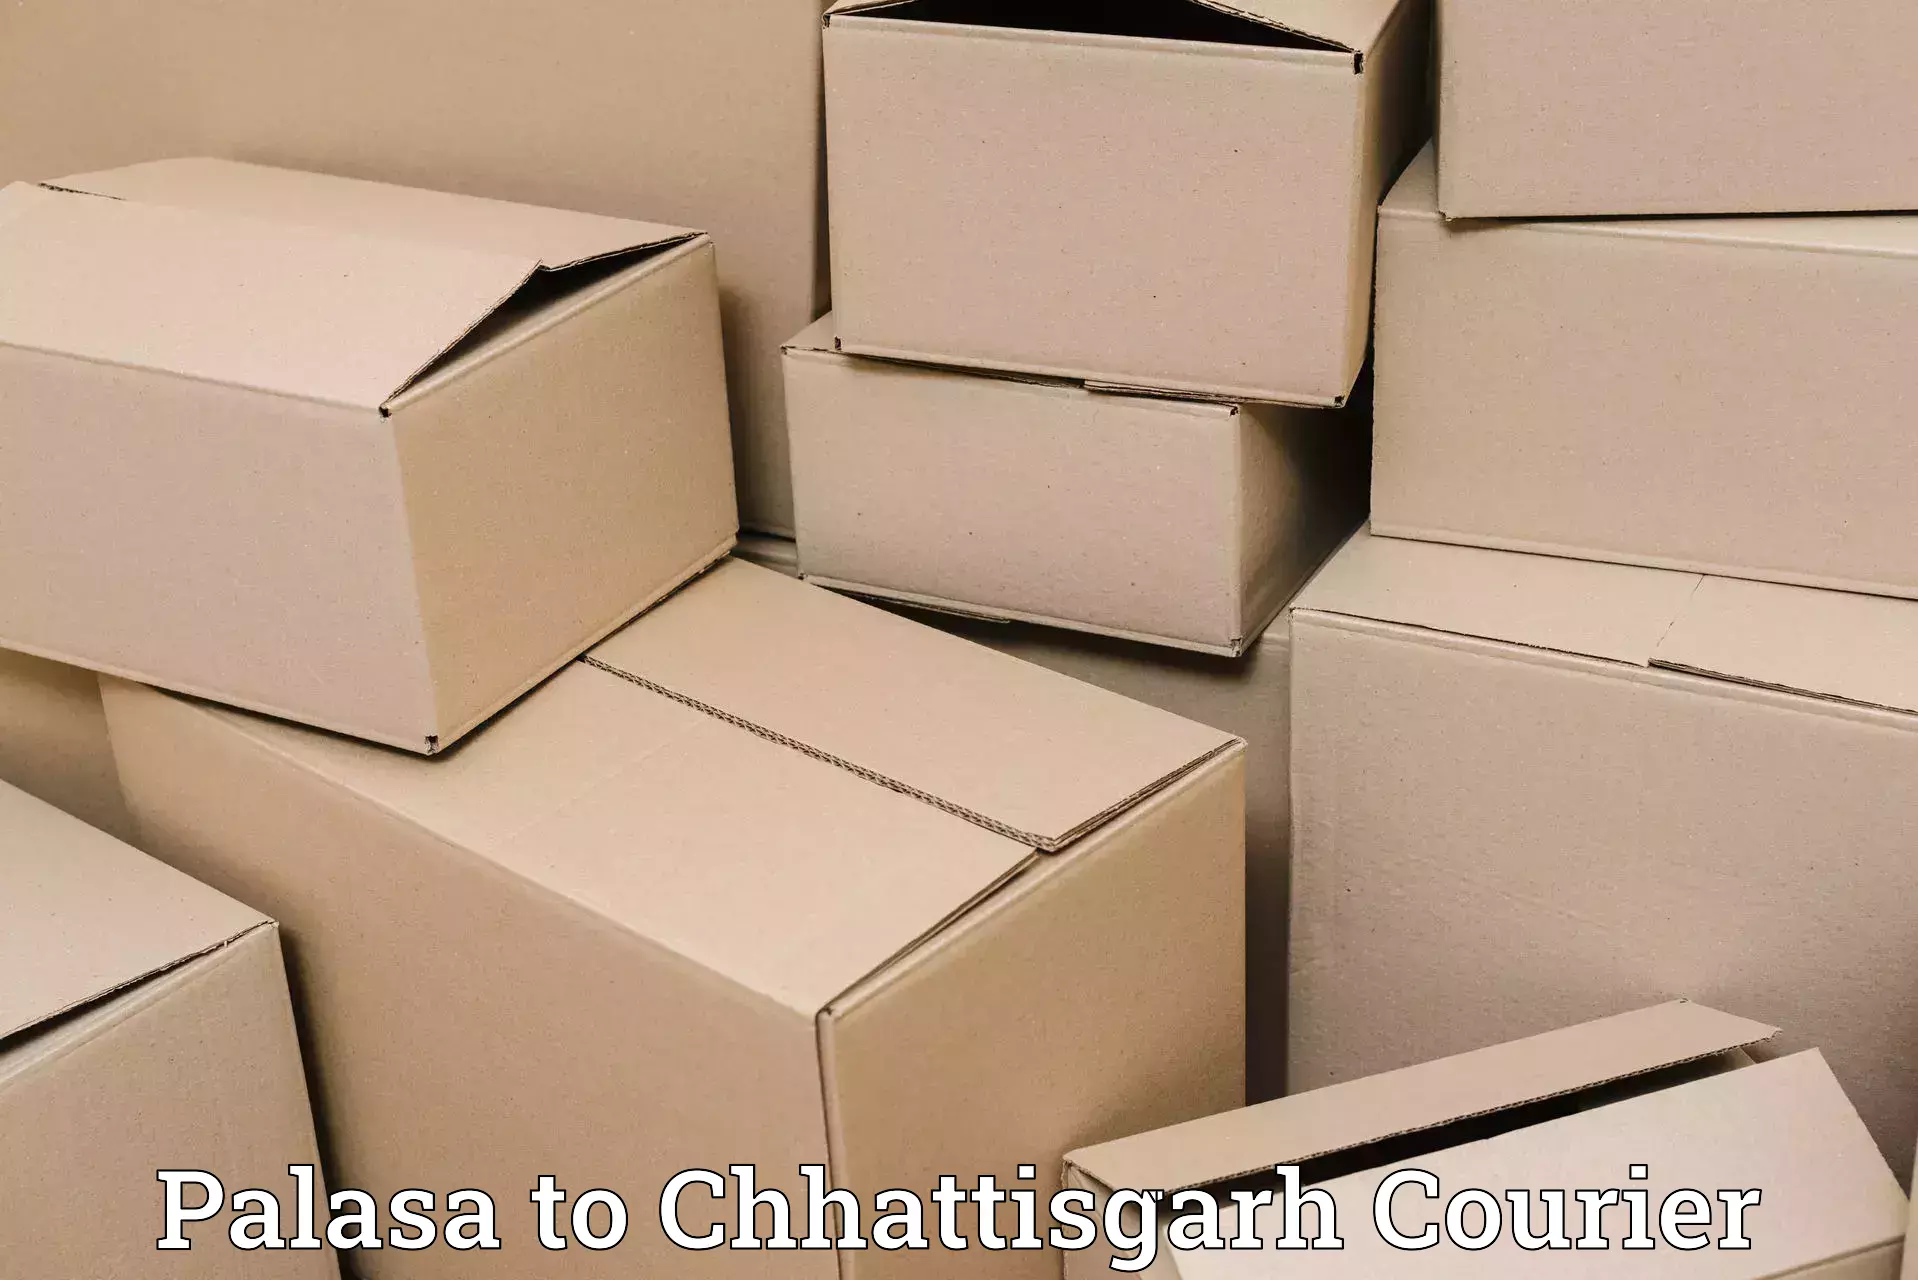 24/7 courier service Palasa to Jaijaipur